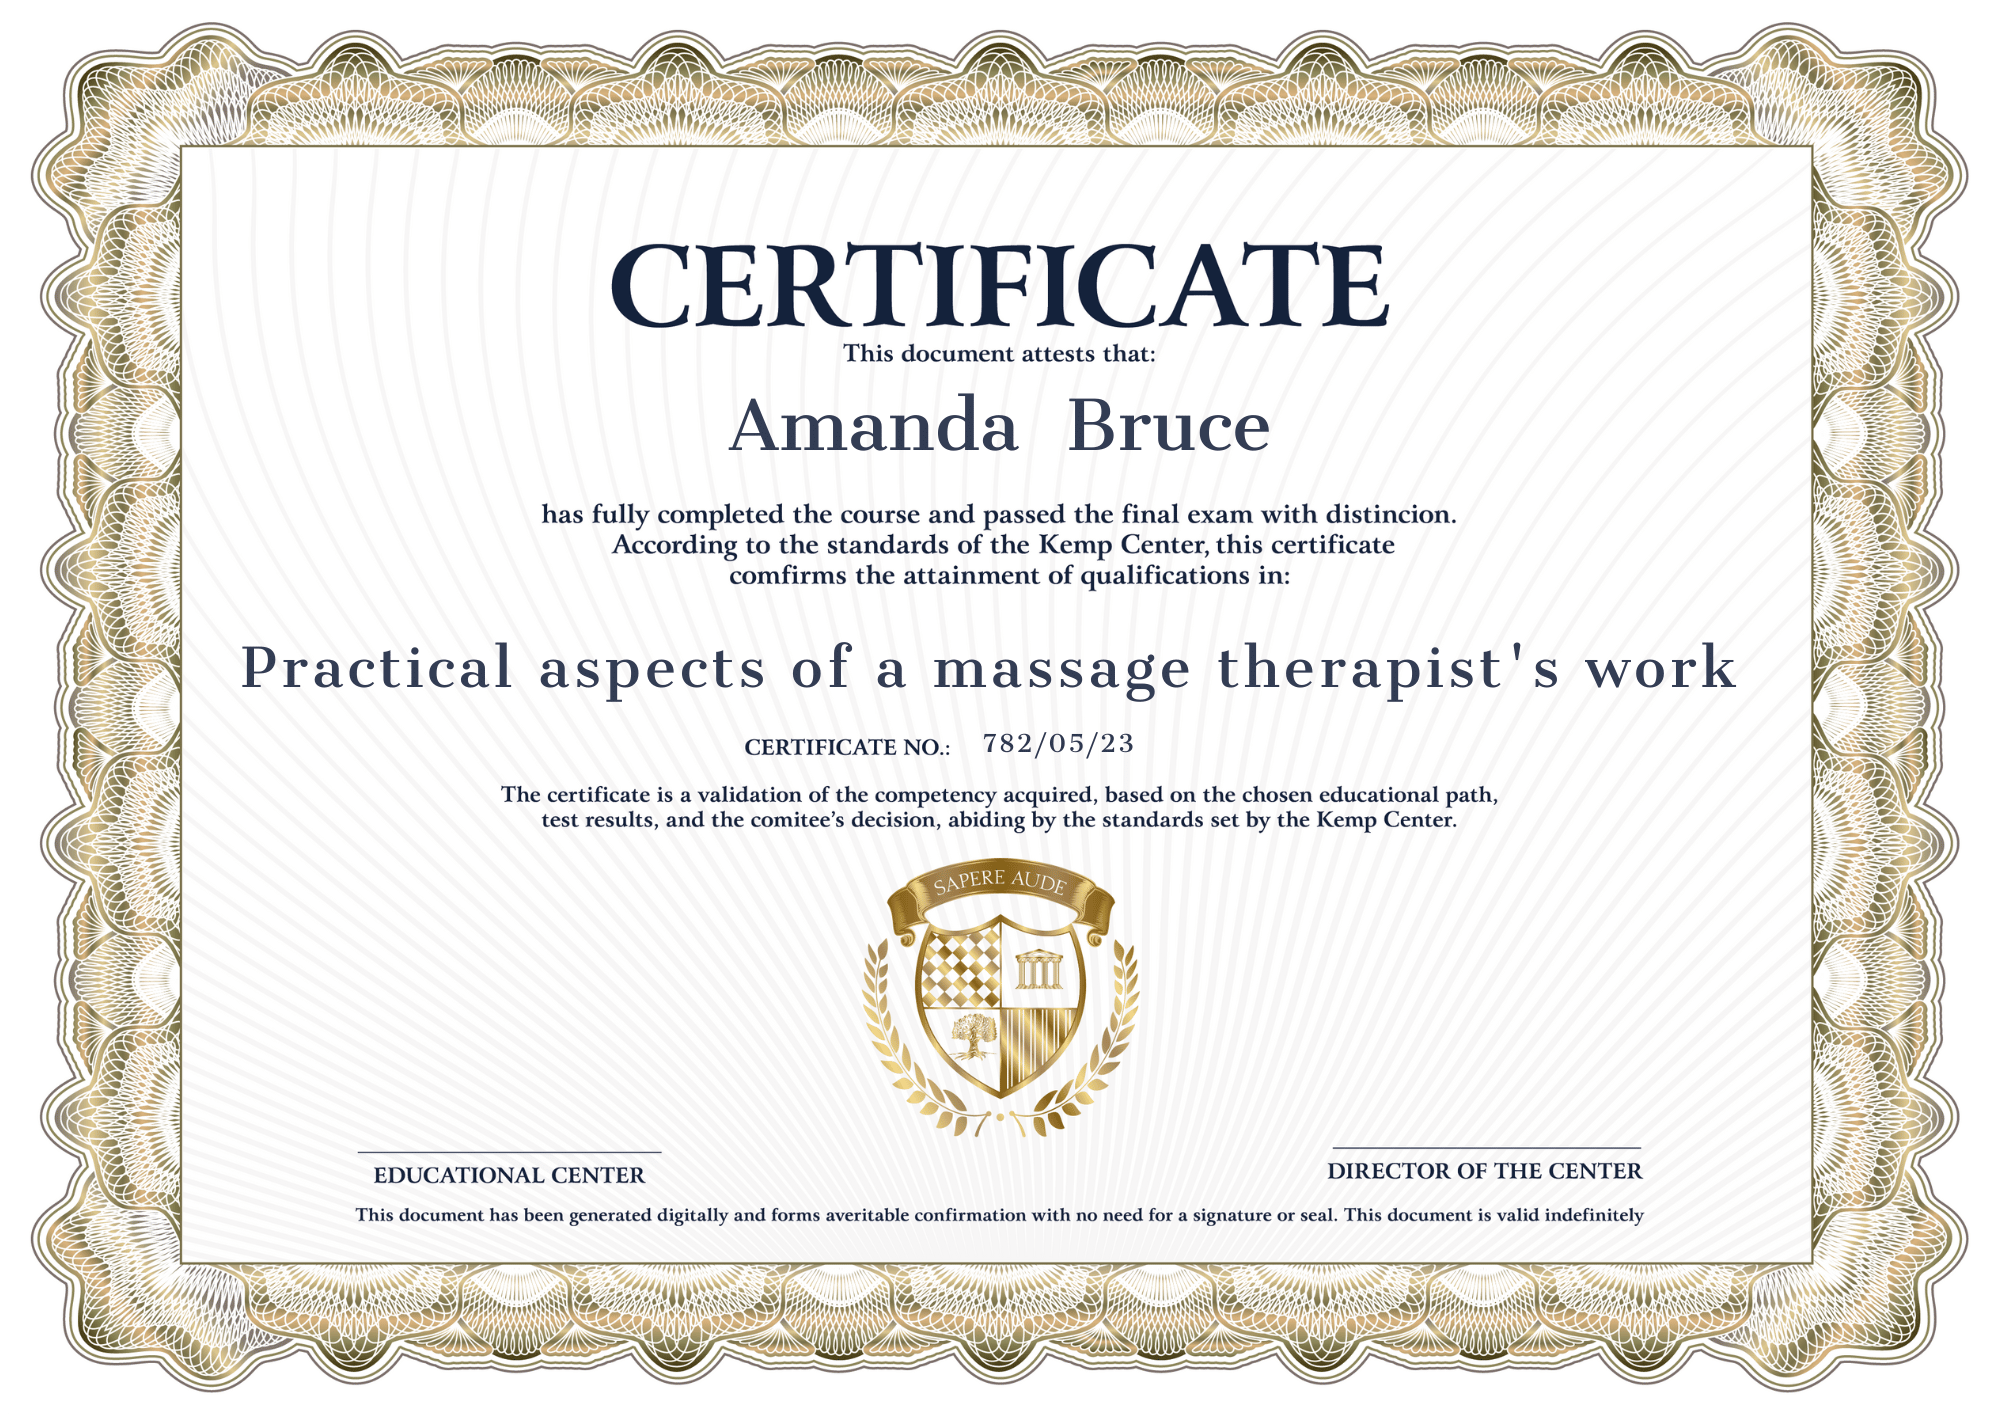 Zertifikat Praktische Aspekte der Arbeit eines Massagetherapeuten